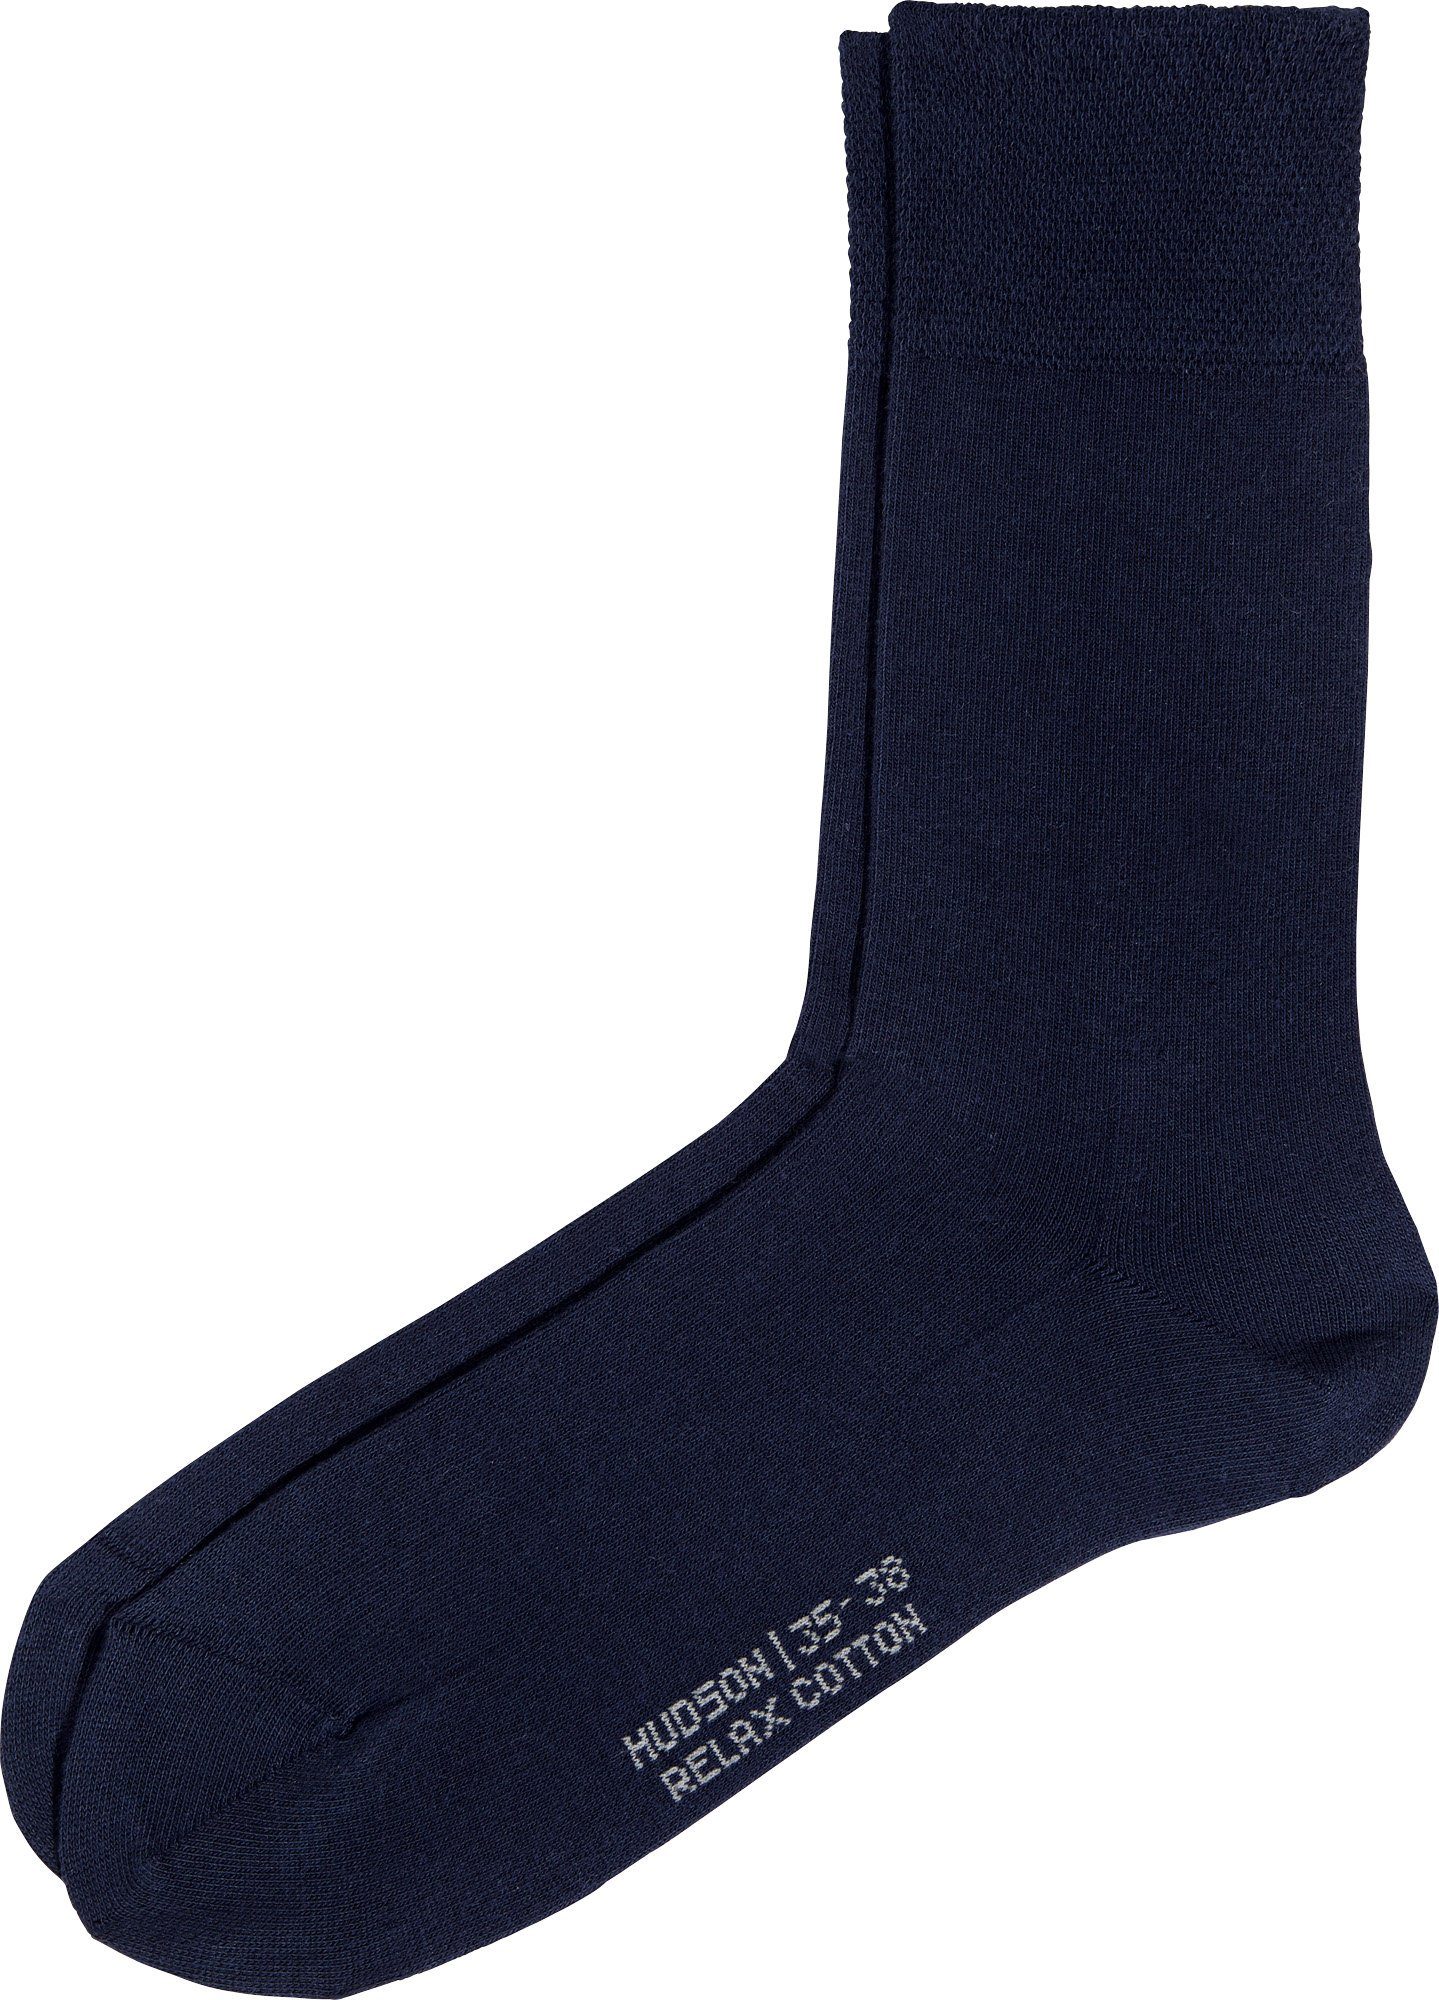 Paar Damen-Socken Softbund Uni Hudson 1 mit marine Socken